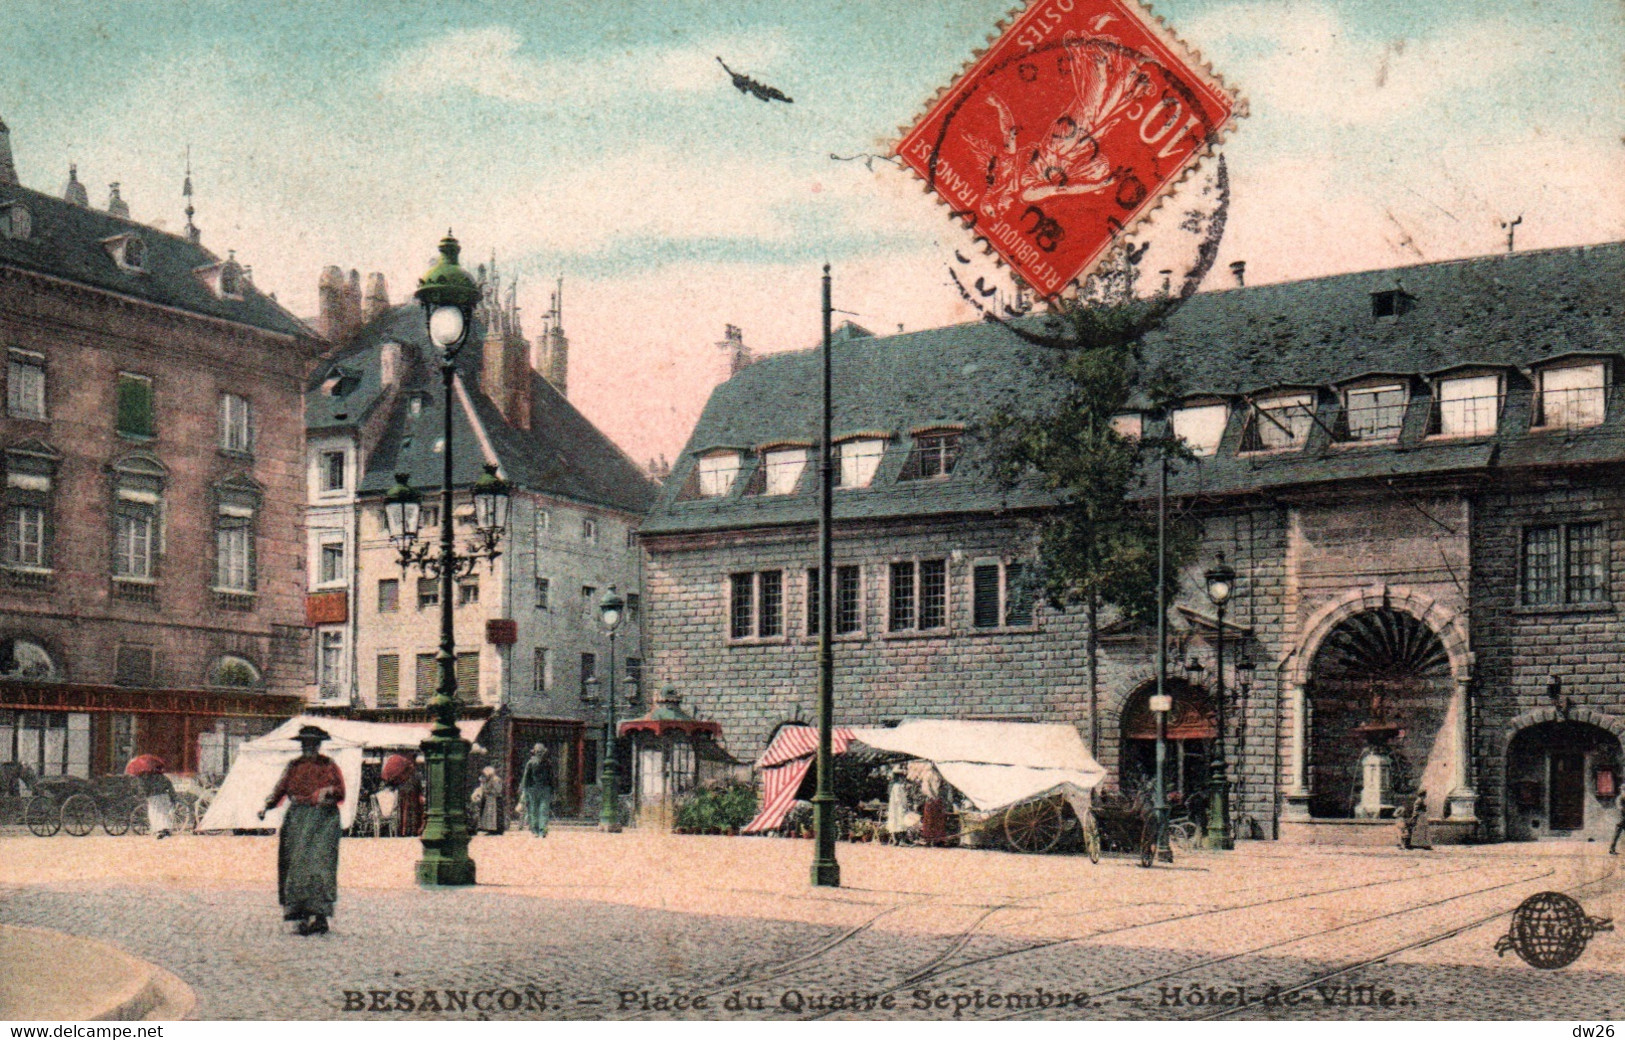 Besançon - Place Du Quatre Septembre, L'Hôtel De Ville - Edition S.F.N.G.R. - Carte Colorisée - Besancon